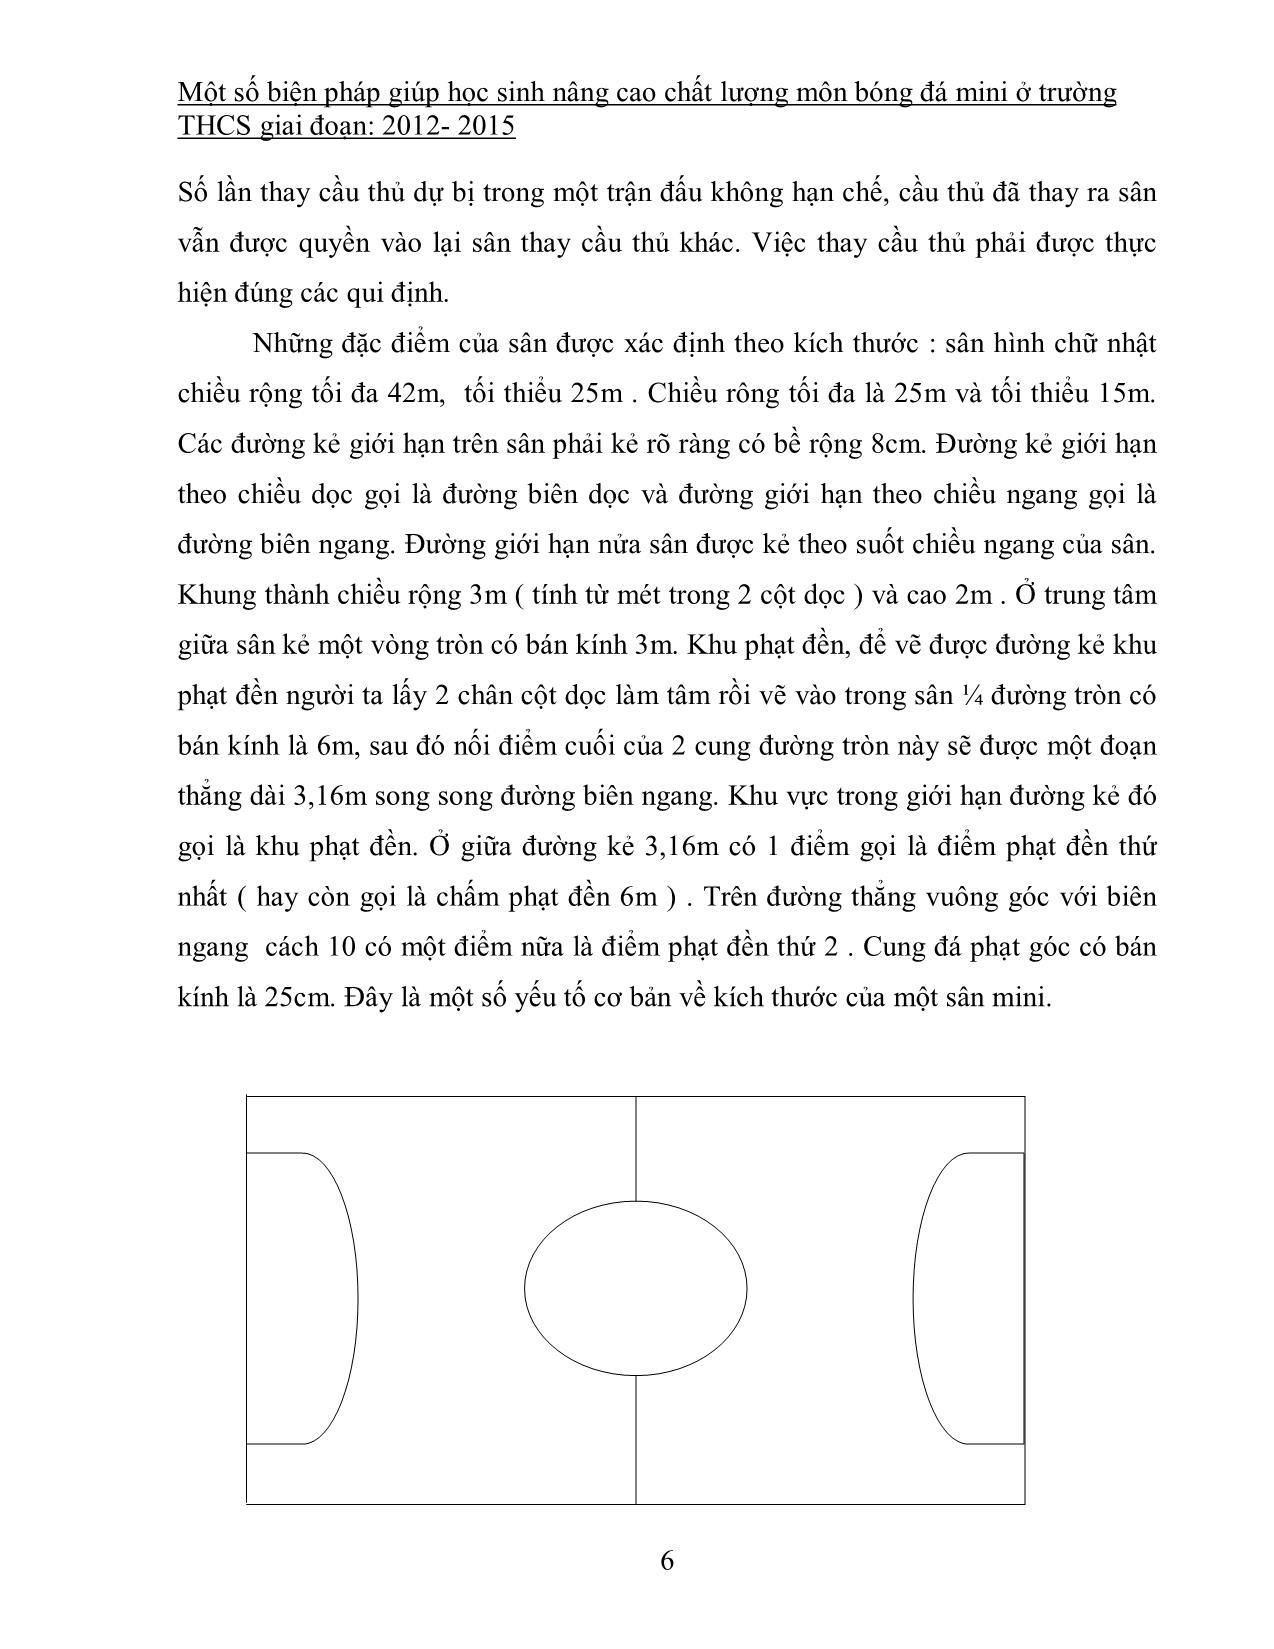 SKKN Một số biện pháp giúp học sinh nâng cao chất lượng môn bóng đá mini ở trường THCS giai đoạn: 2012 - 2015 trang 6